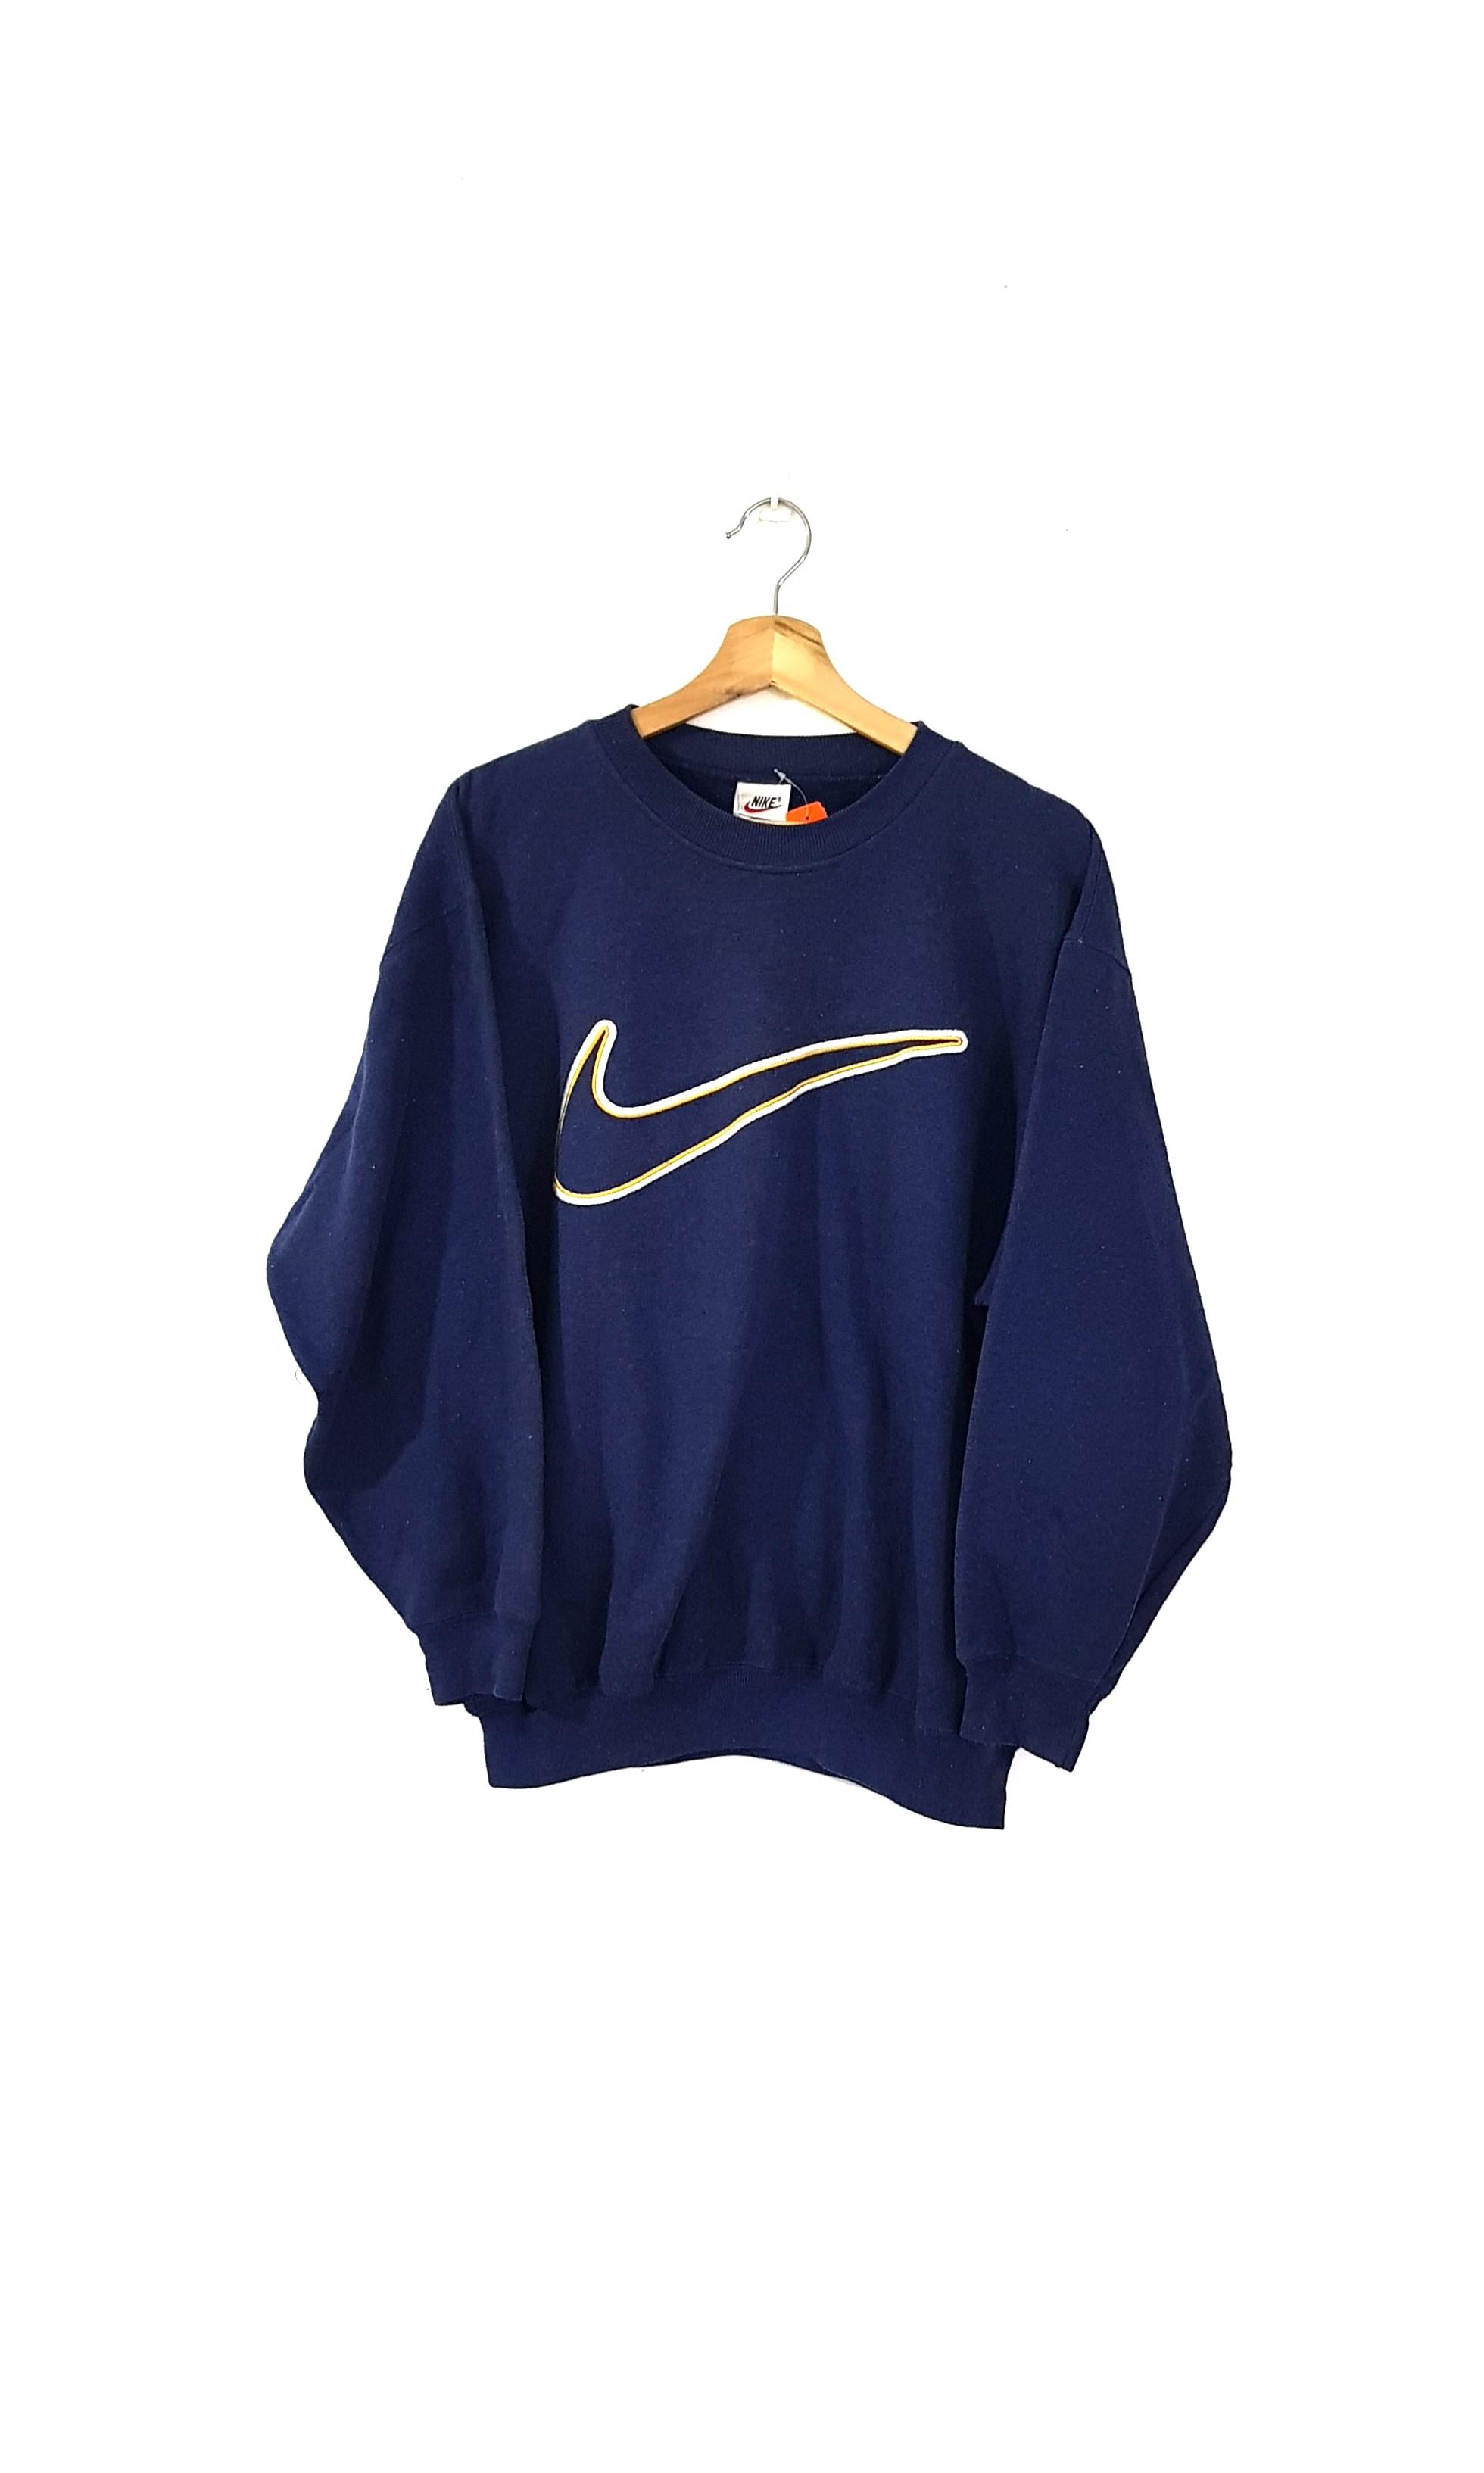 Vintage 90s Nike Big Swoosh Sweatshirt 